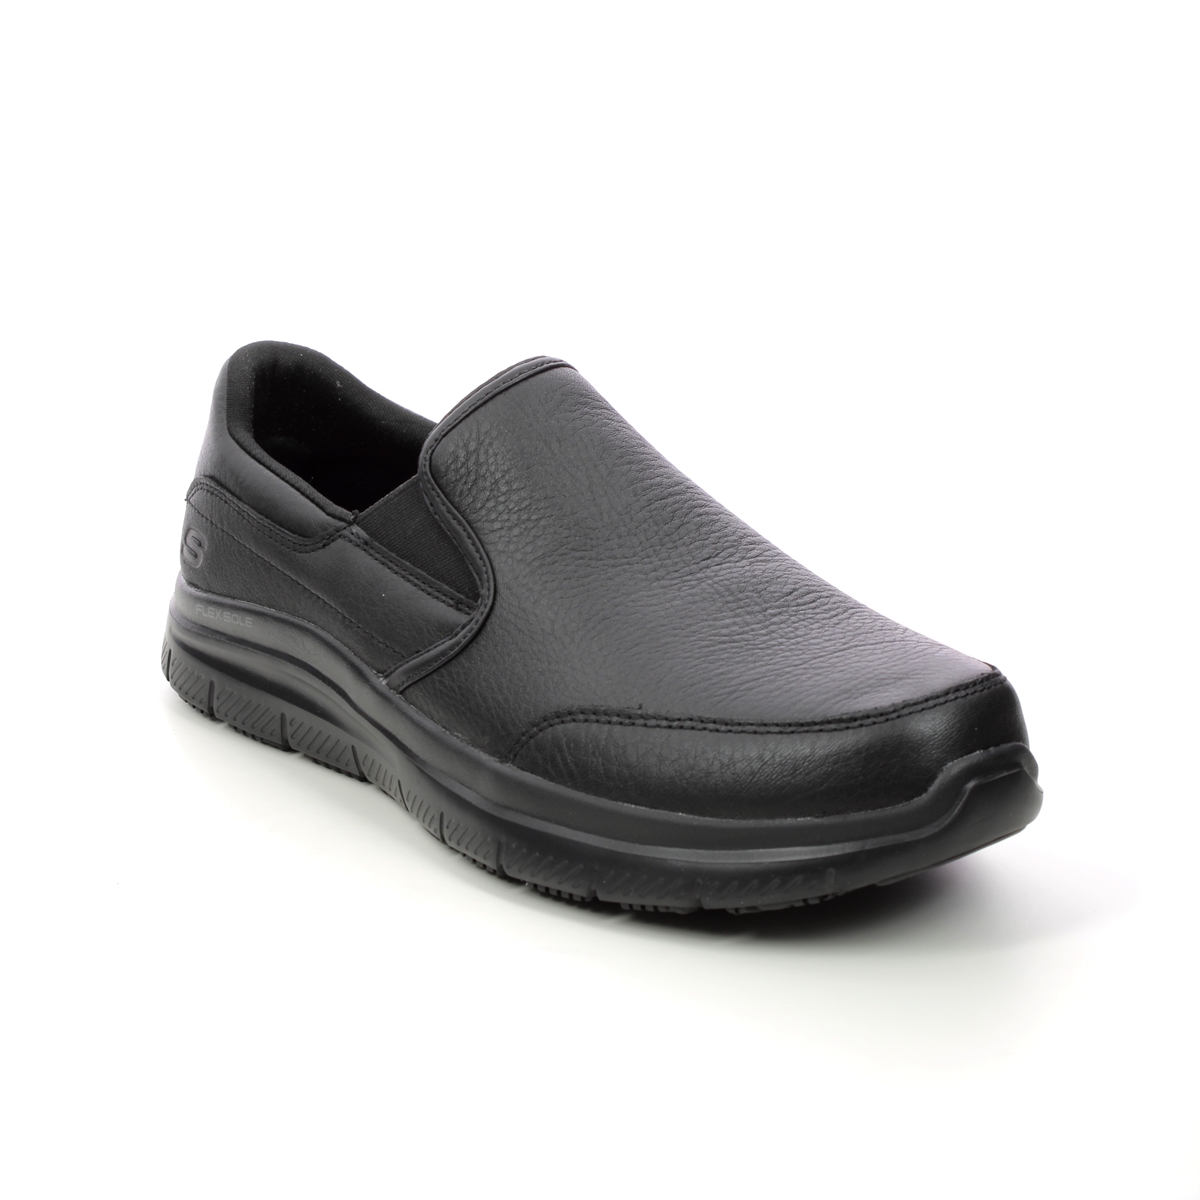 https://www.beggshoes.com/images/products/verylarge/skechers-work-leather-slip-resistant-77071ec-blk-black-slip-on-shoes-1679405260-666707198-01.jpg